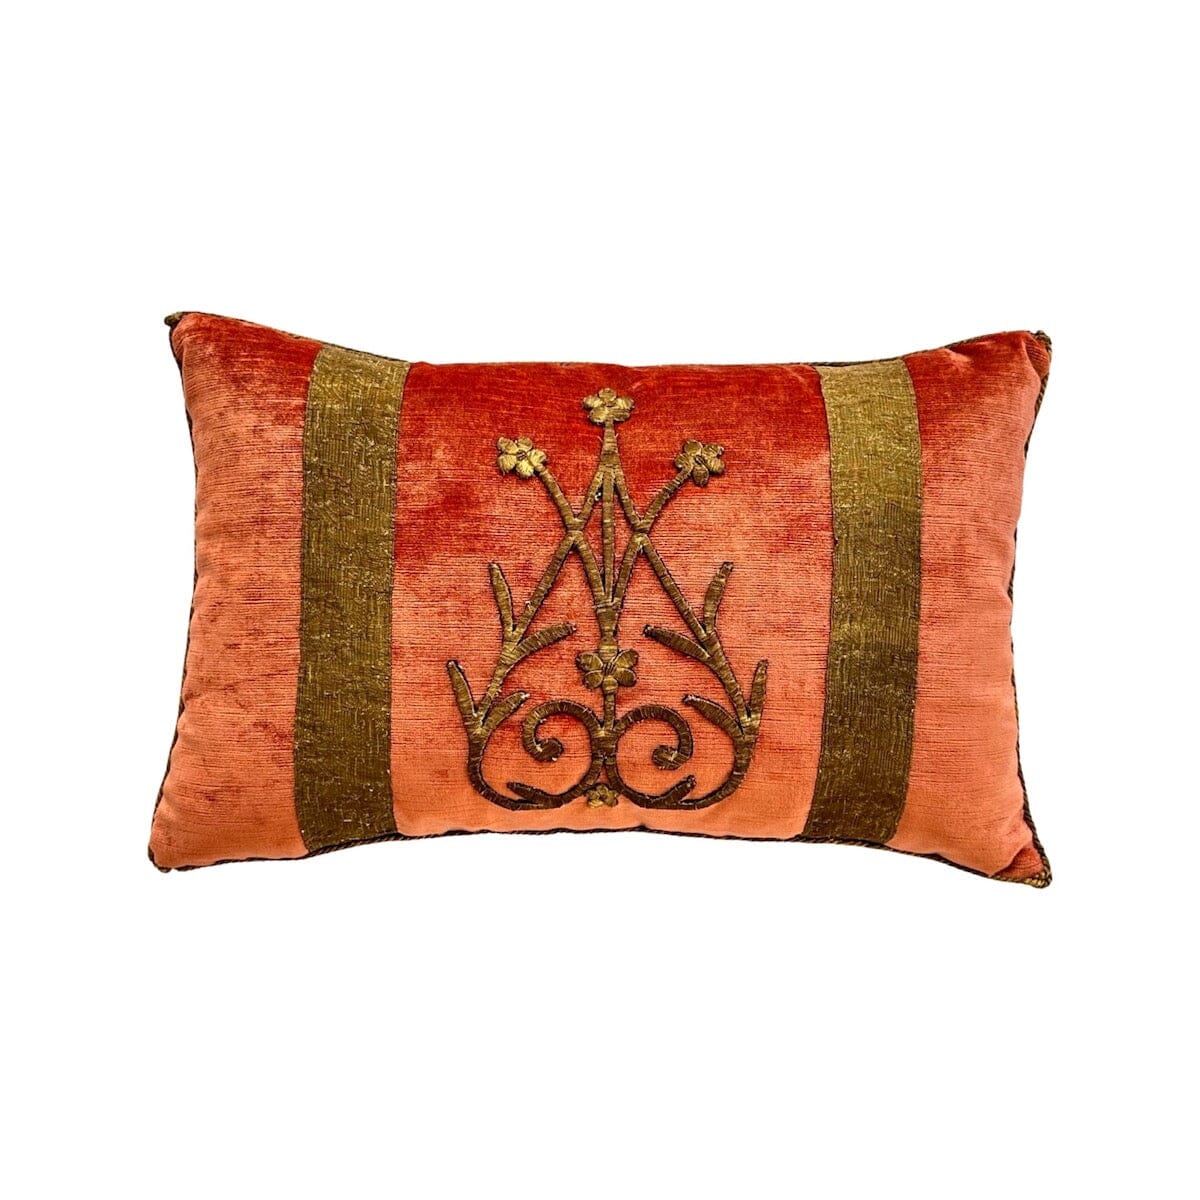 18th C. Antique Ottoman Empire Gold Metallic Pillow (#E050723A&B | 12 1/2 x 19)